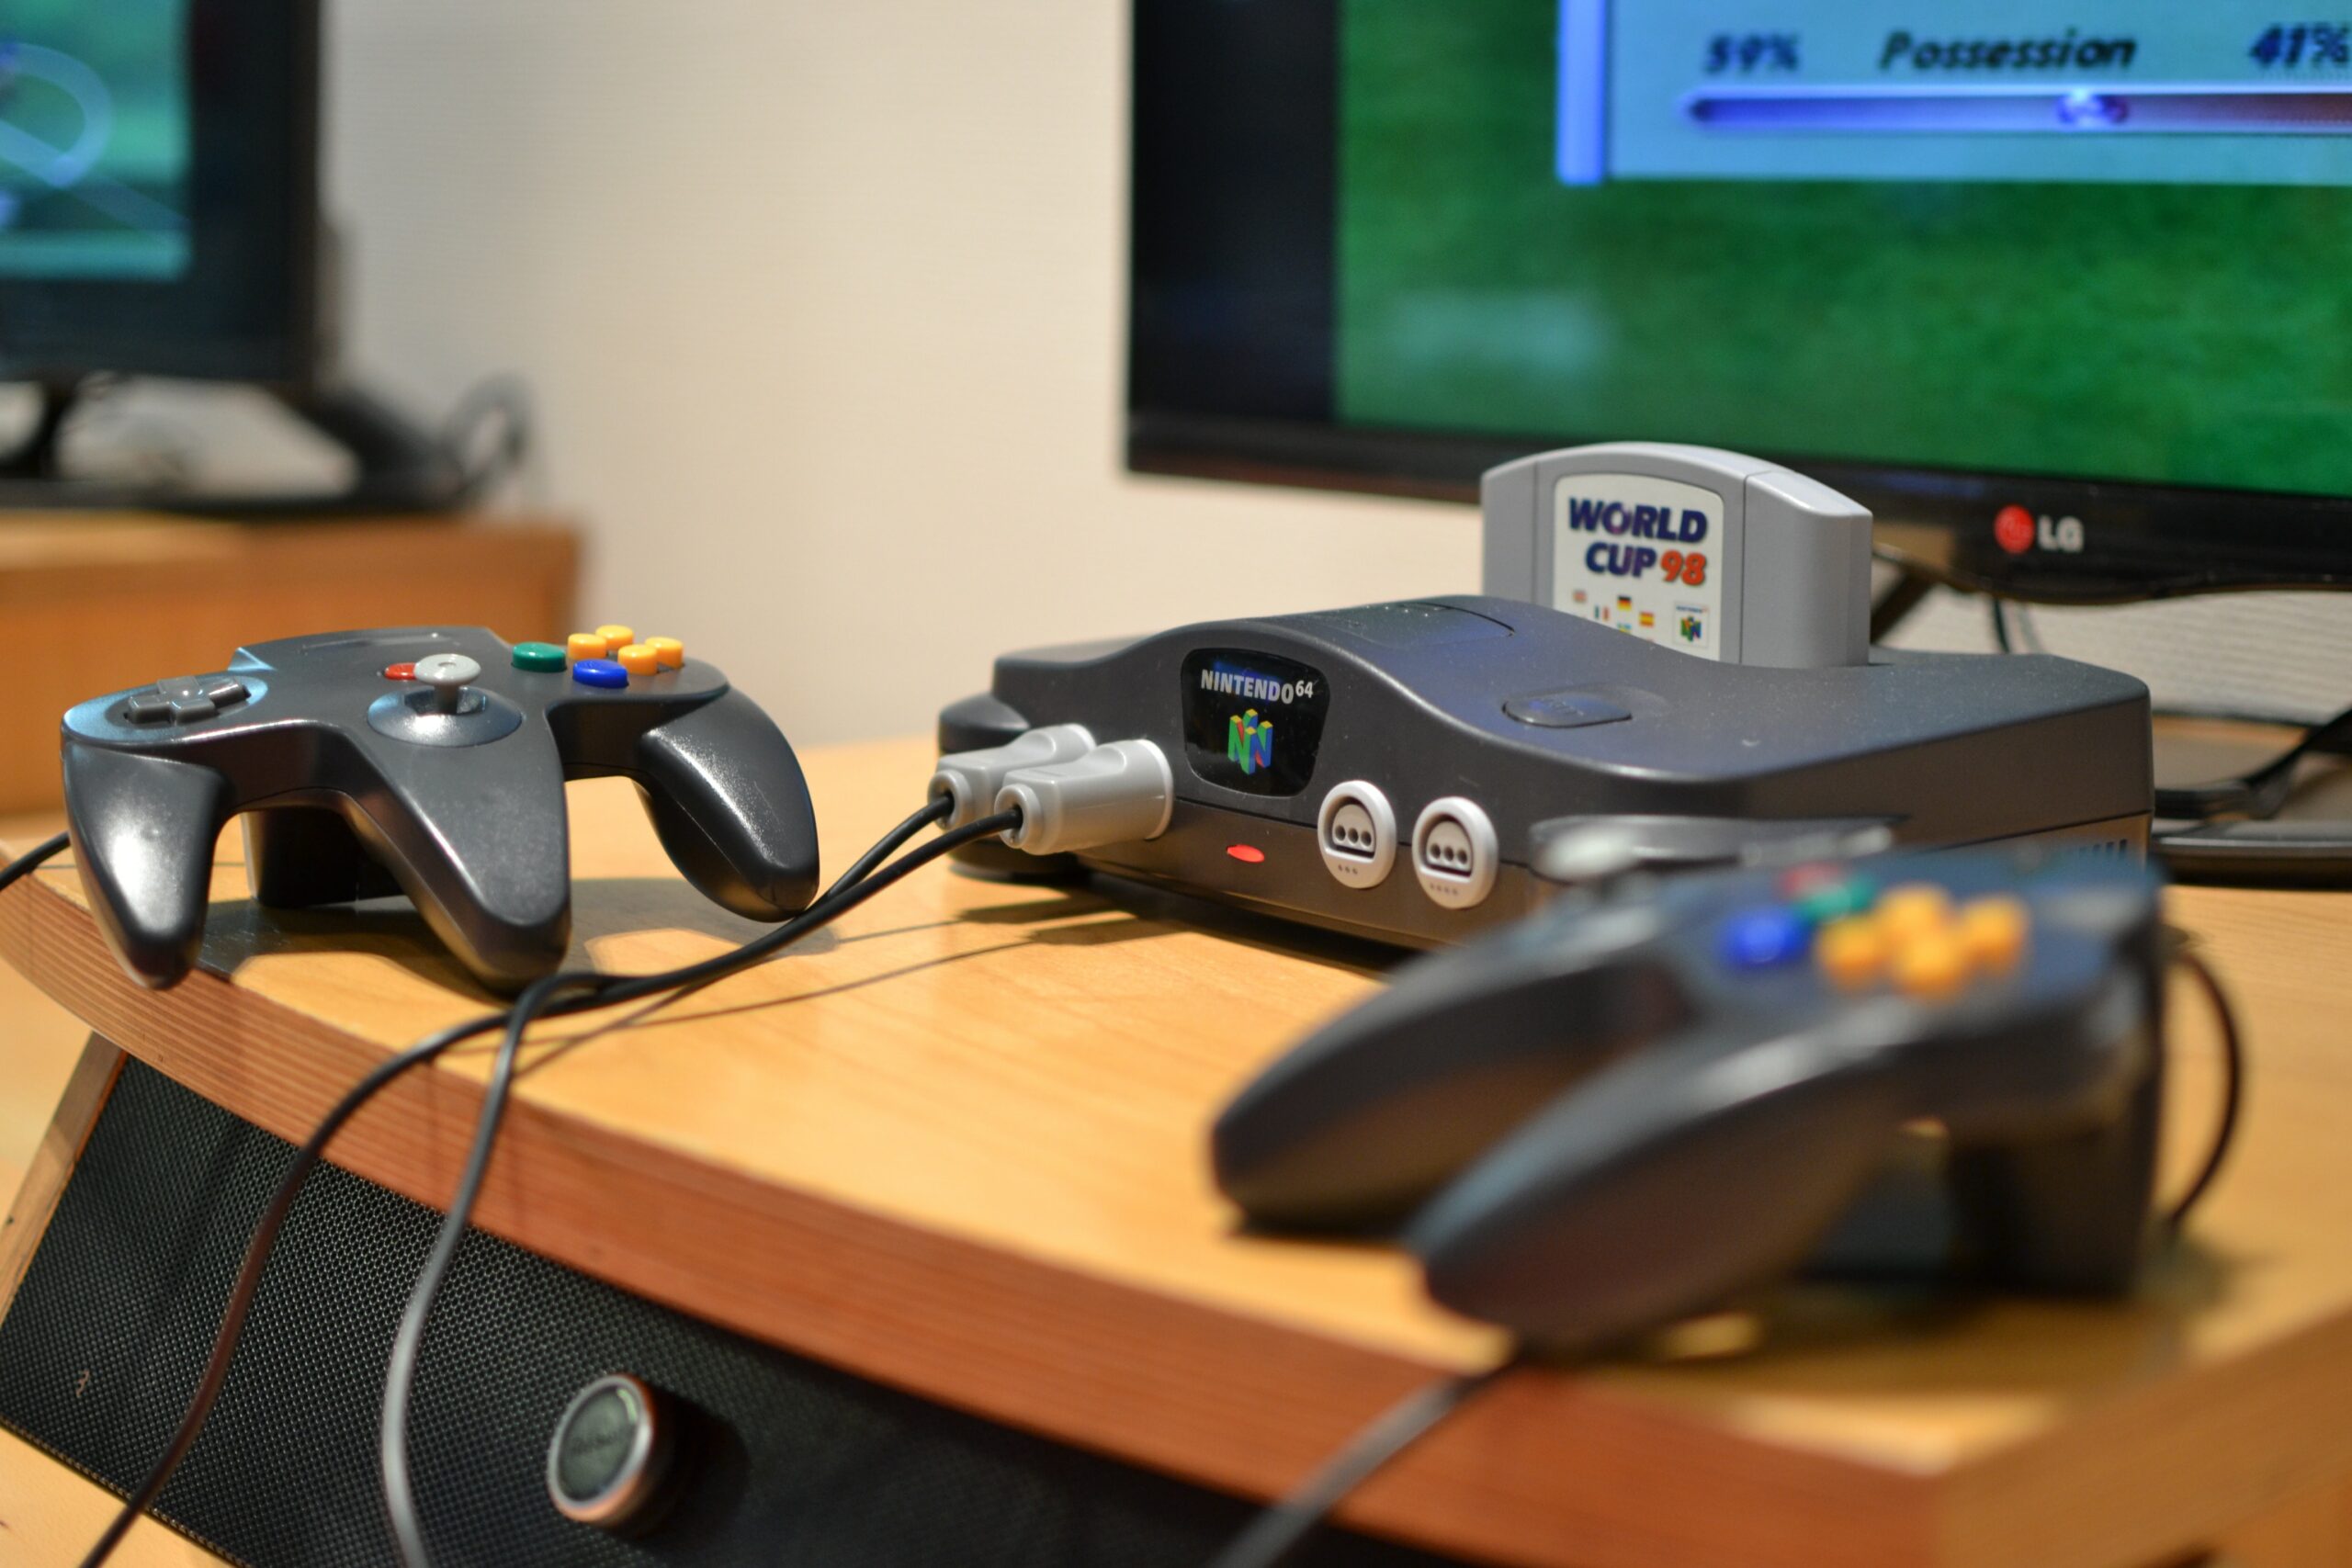 Nintendo 64: confira os 10 jogos mais emulados do console